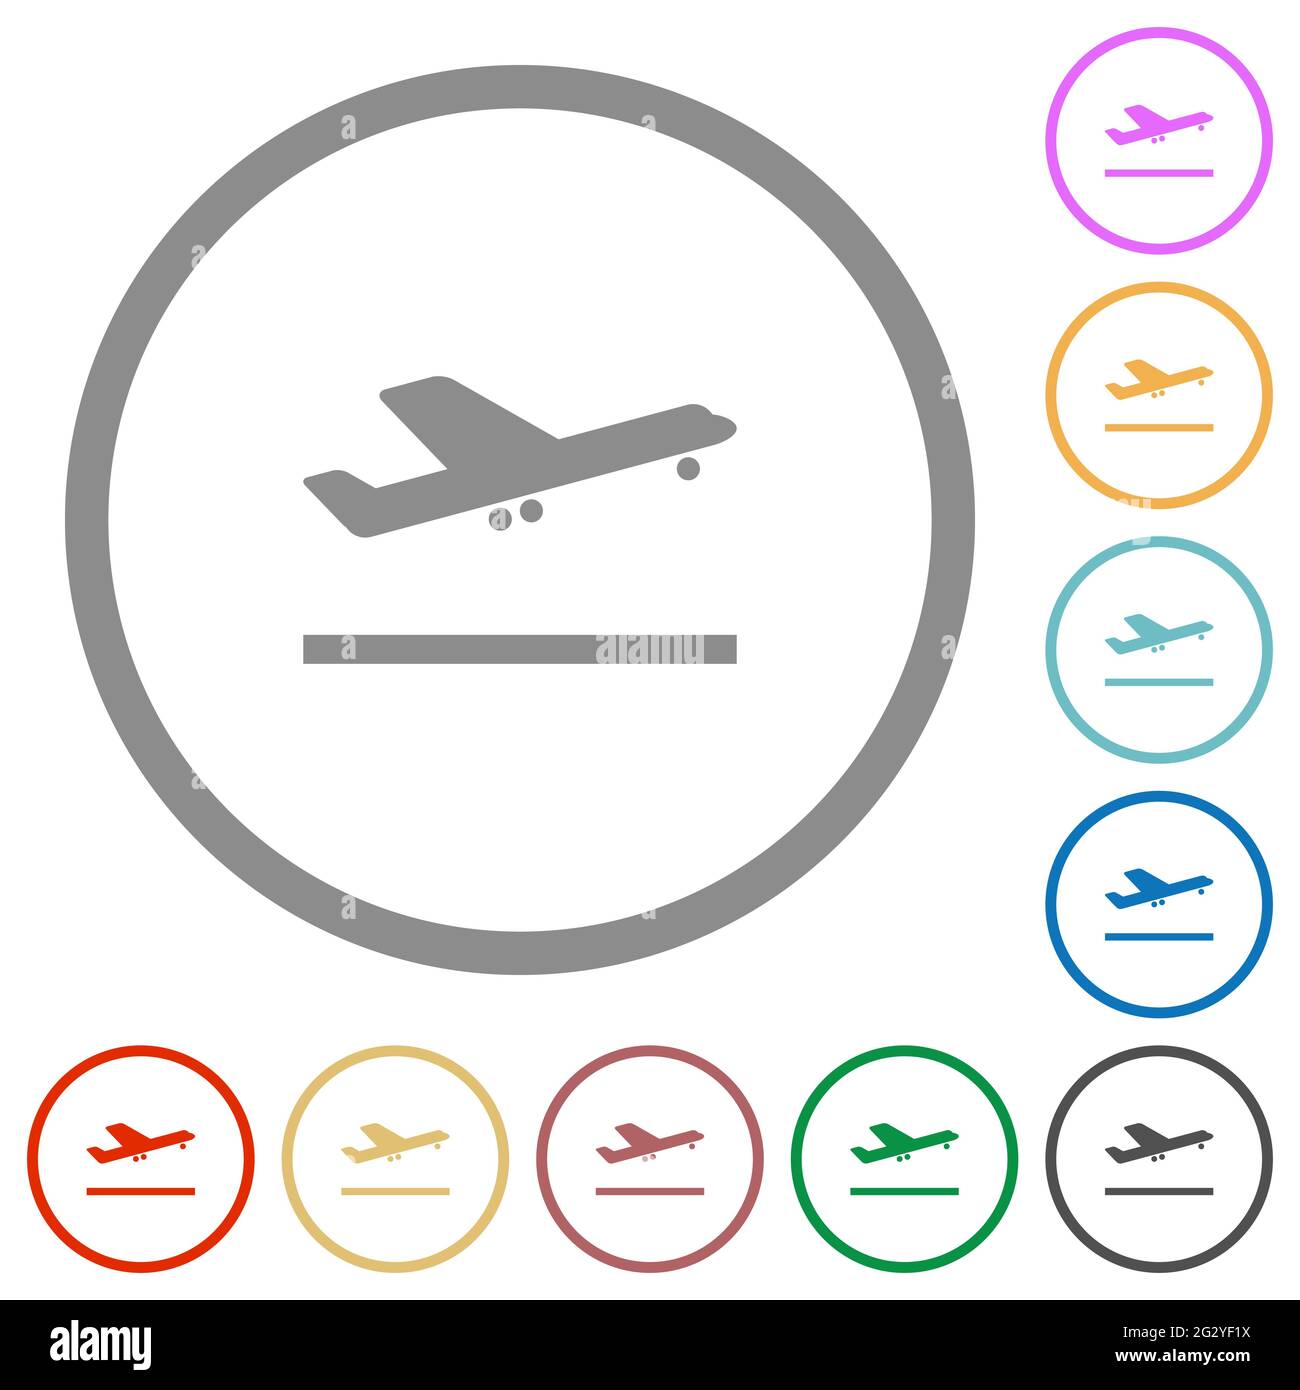 Flugzeug heben flache Farbsymbole in runden Umrissen auf weißem Hintergrund ab Stock Vektor